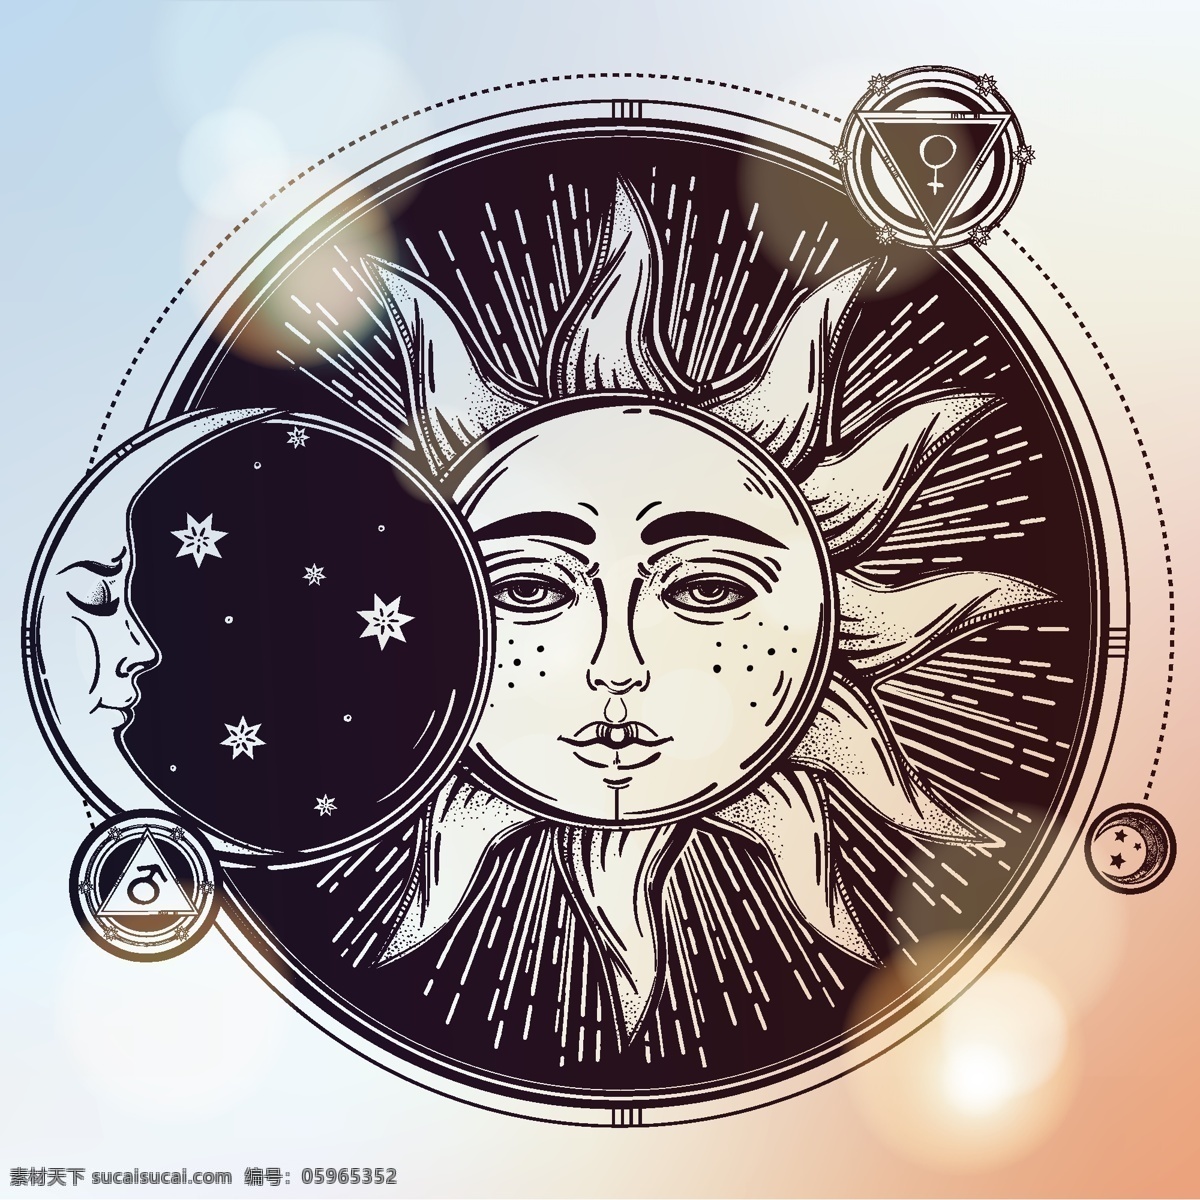 太阳月亮插画 太阳 月亮 阴阳 手绘花纹 装饰花纹 手绘插画 太阳花纹 星星 生活百科 矢量素材